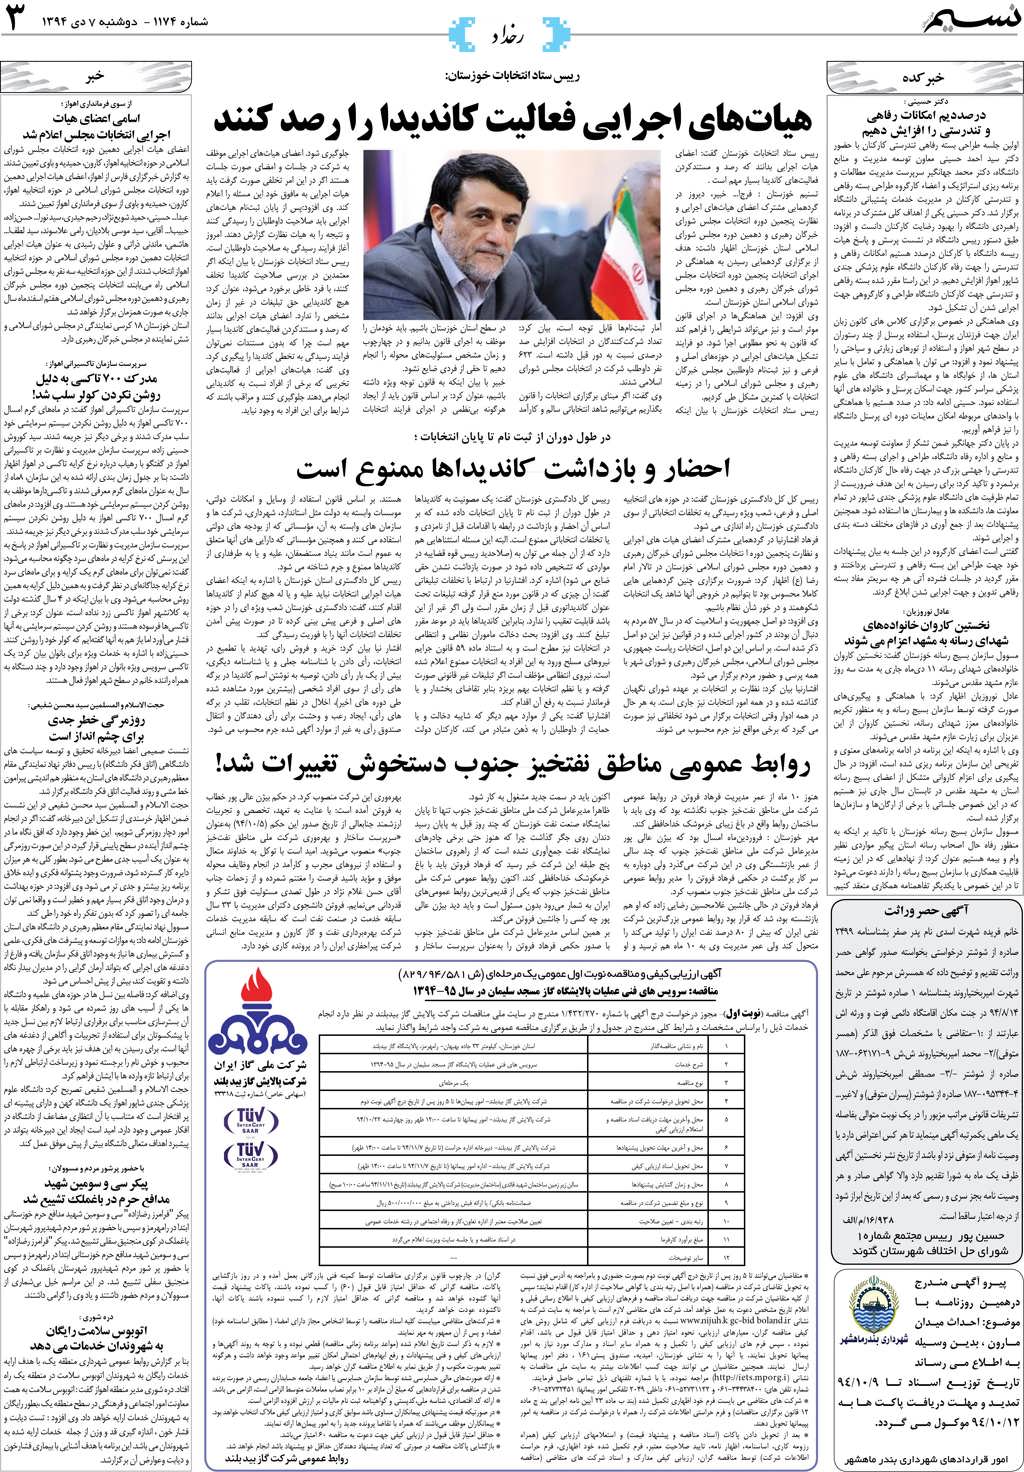 صفحه رخداد روزنامه نسیم شماره 1174